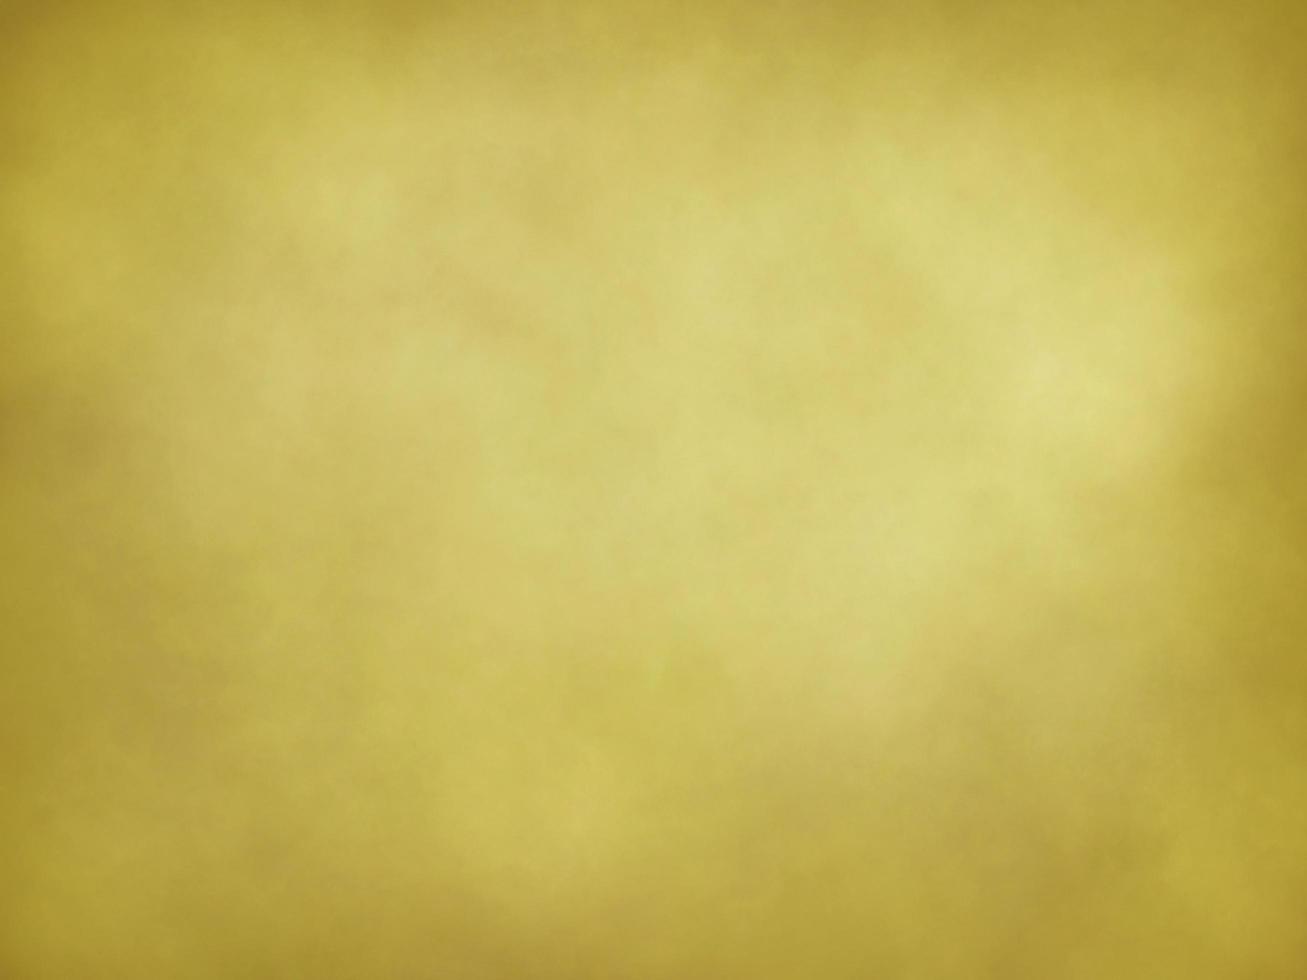 abstrakter hintergrund braun gelb farbverlauf design kühler ton für web, mobile anwendungen, cover, karte, infografik, banner, soziale medien und kopie schreiben, glatte oberflächentextur materialwand foto